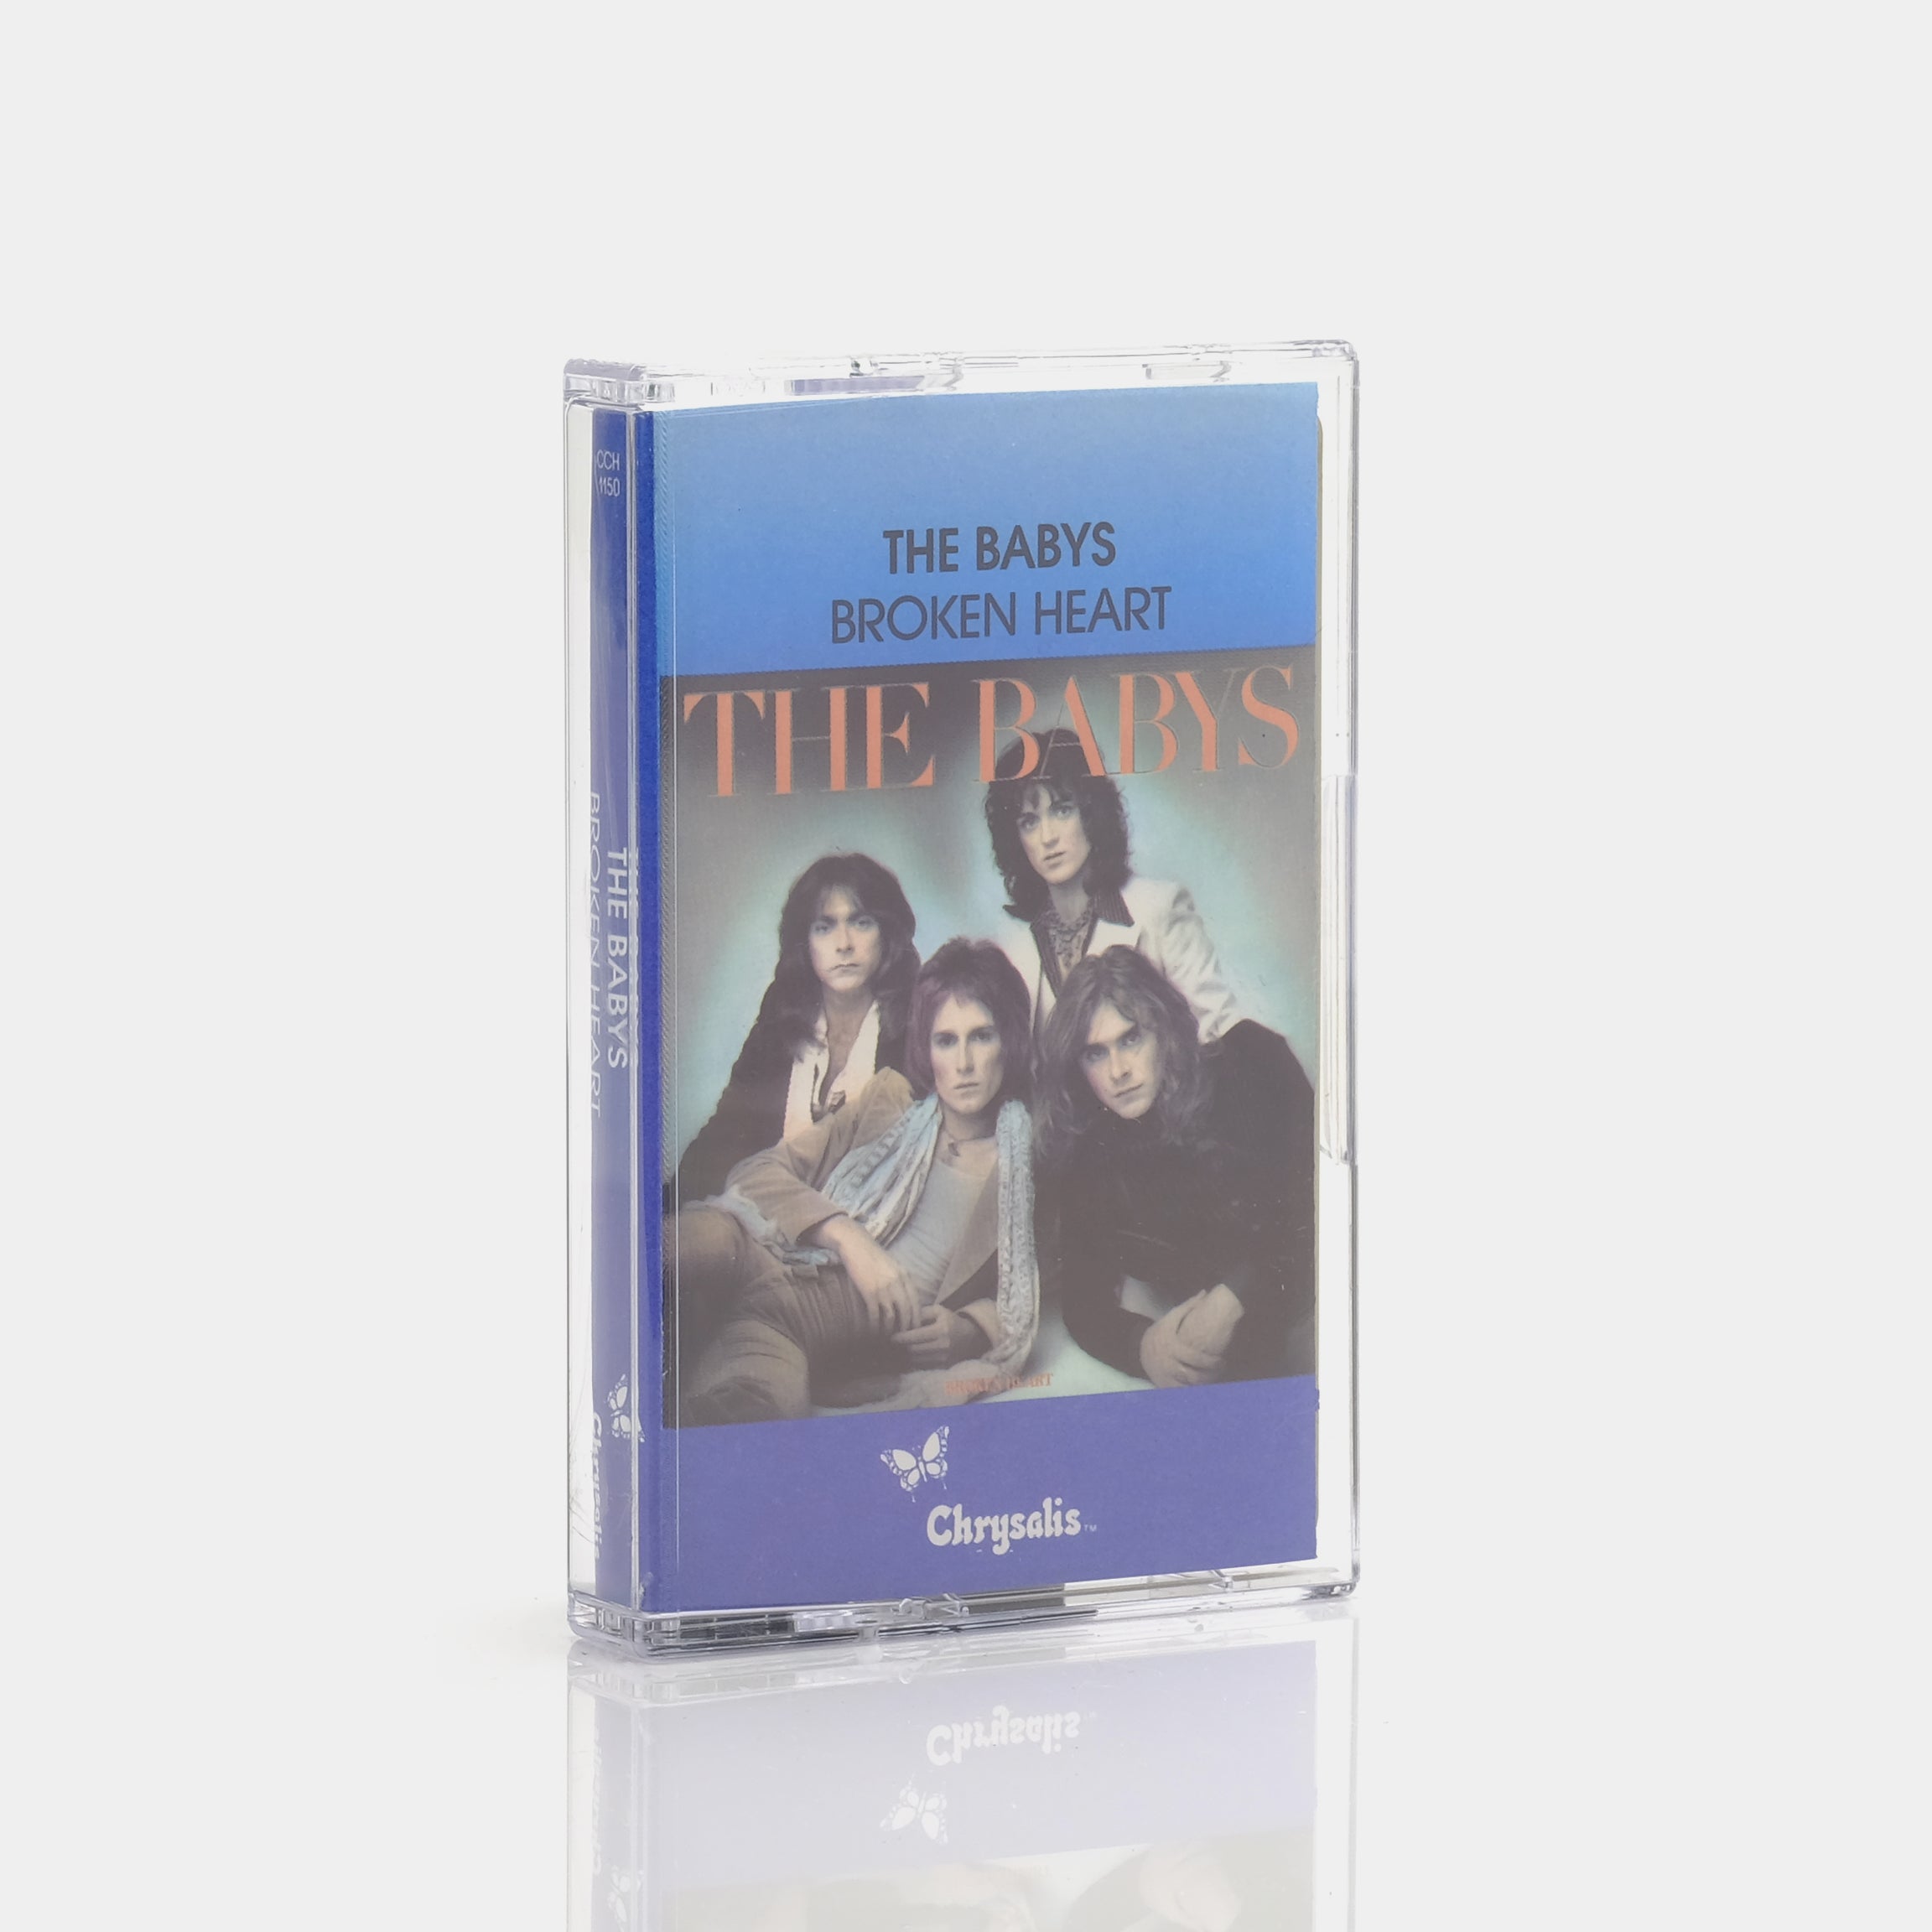 The Babys - Broken Heart Cassette Tape